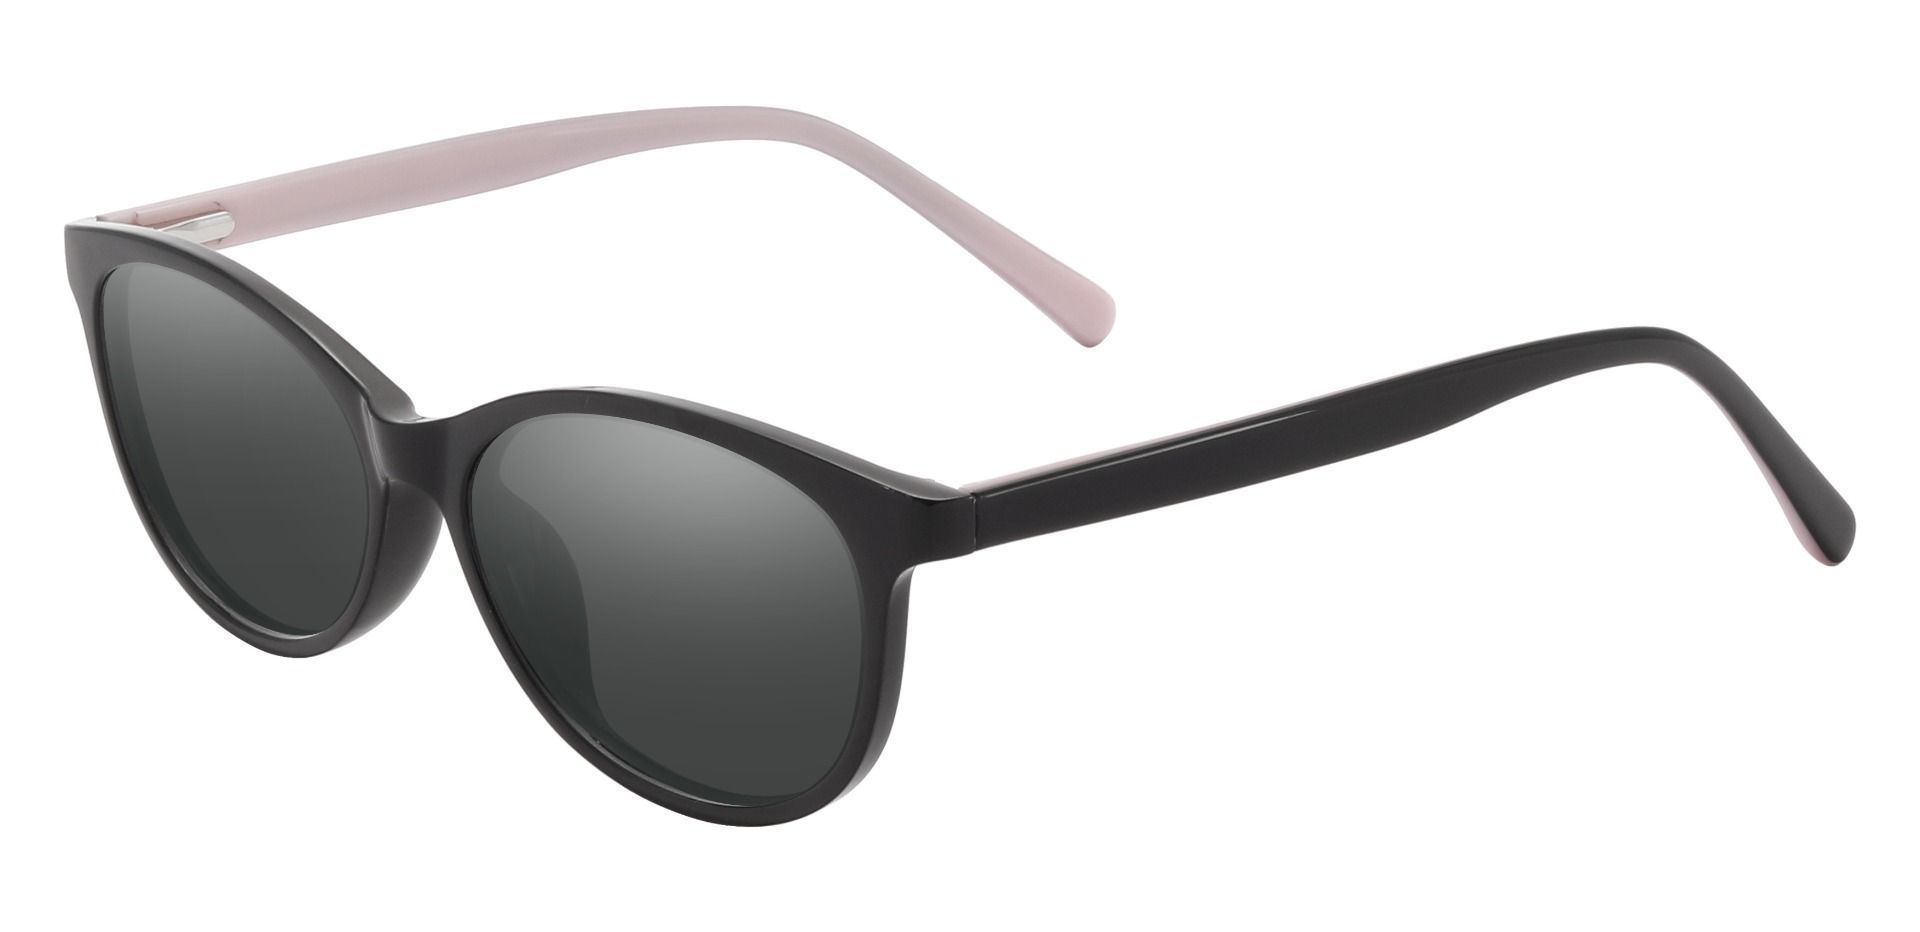 Adora Oval Prescription Sunglasses - Black Frame With Gray Lenses